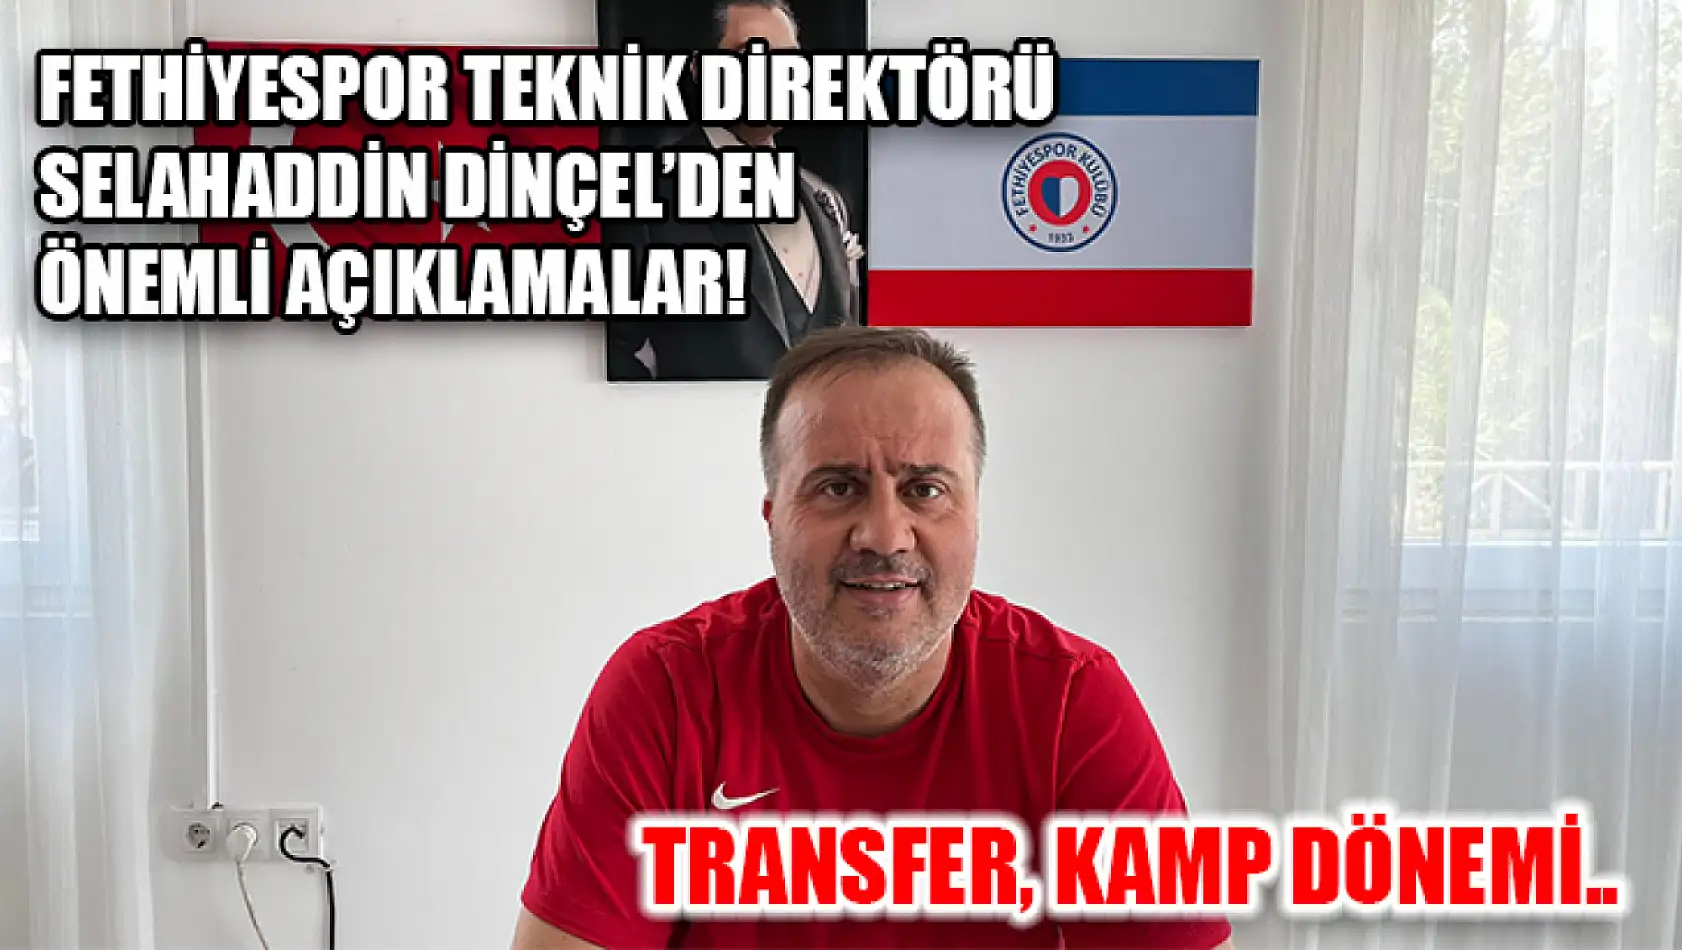 Fethiyespor Teknik Direktörü Selahaddin Dinçel'den Önemli Açıklamalar! Transfer, Kamp Dönemi..